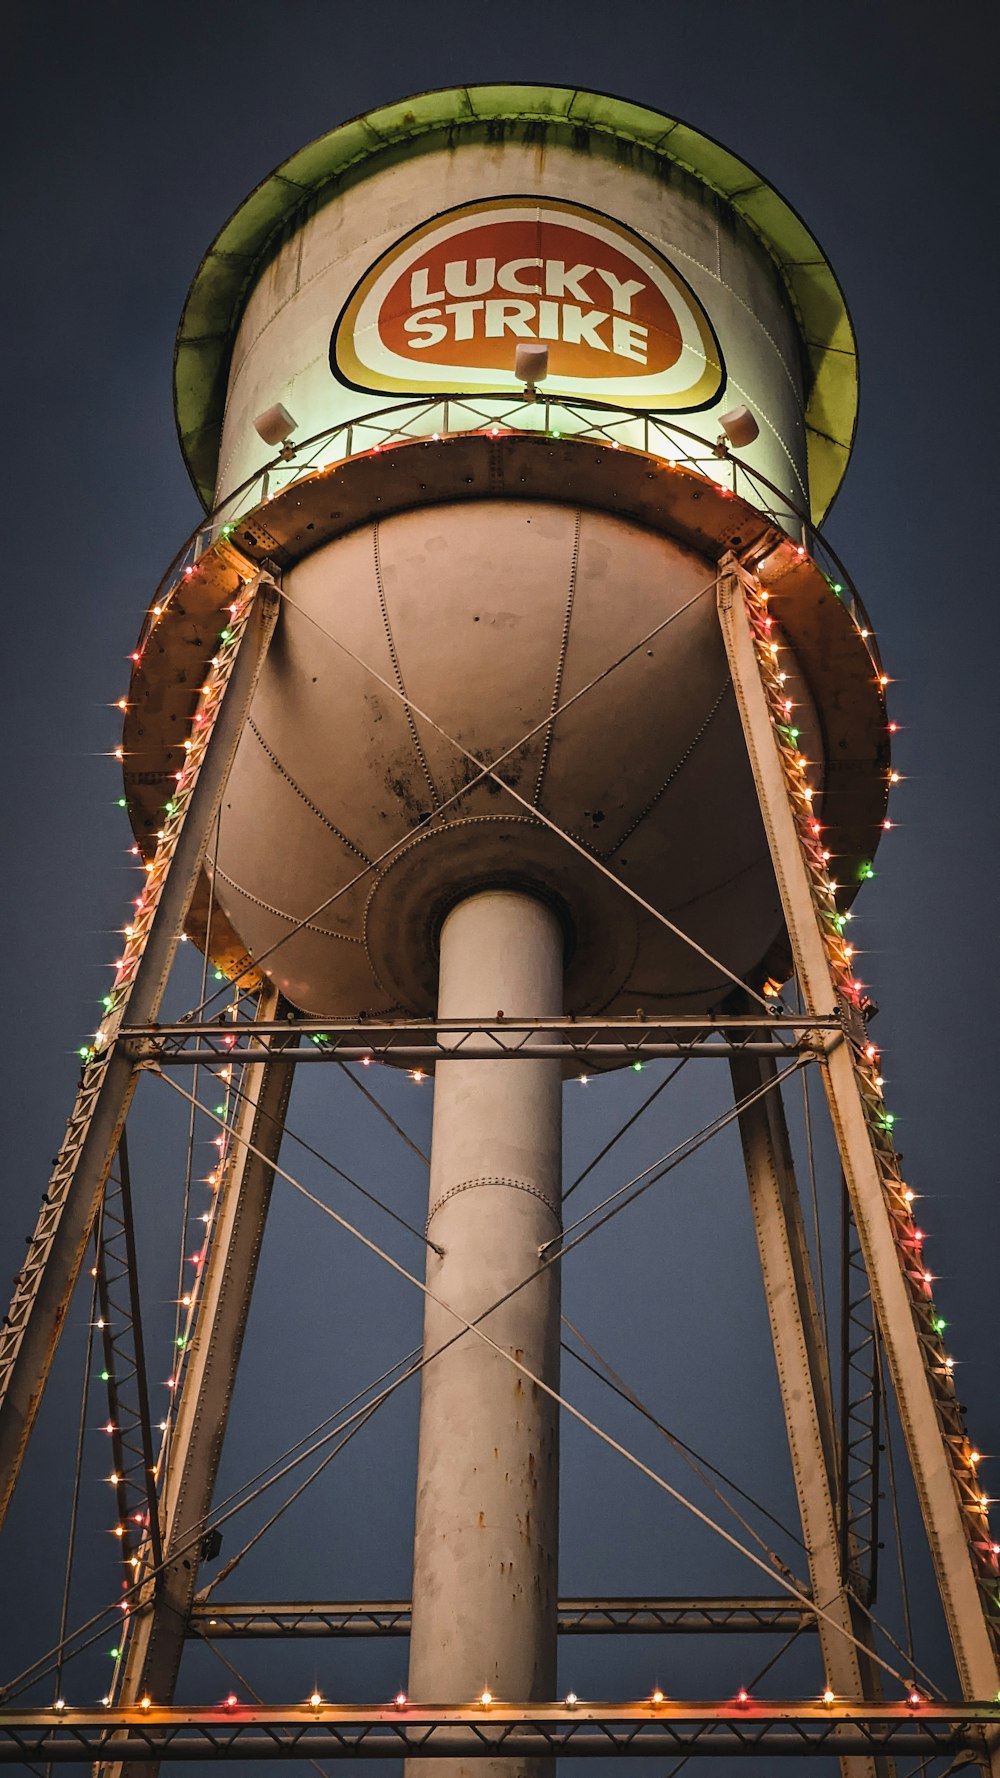 Le château d’eau Lucky Strike est décoré de lumières de Noël